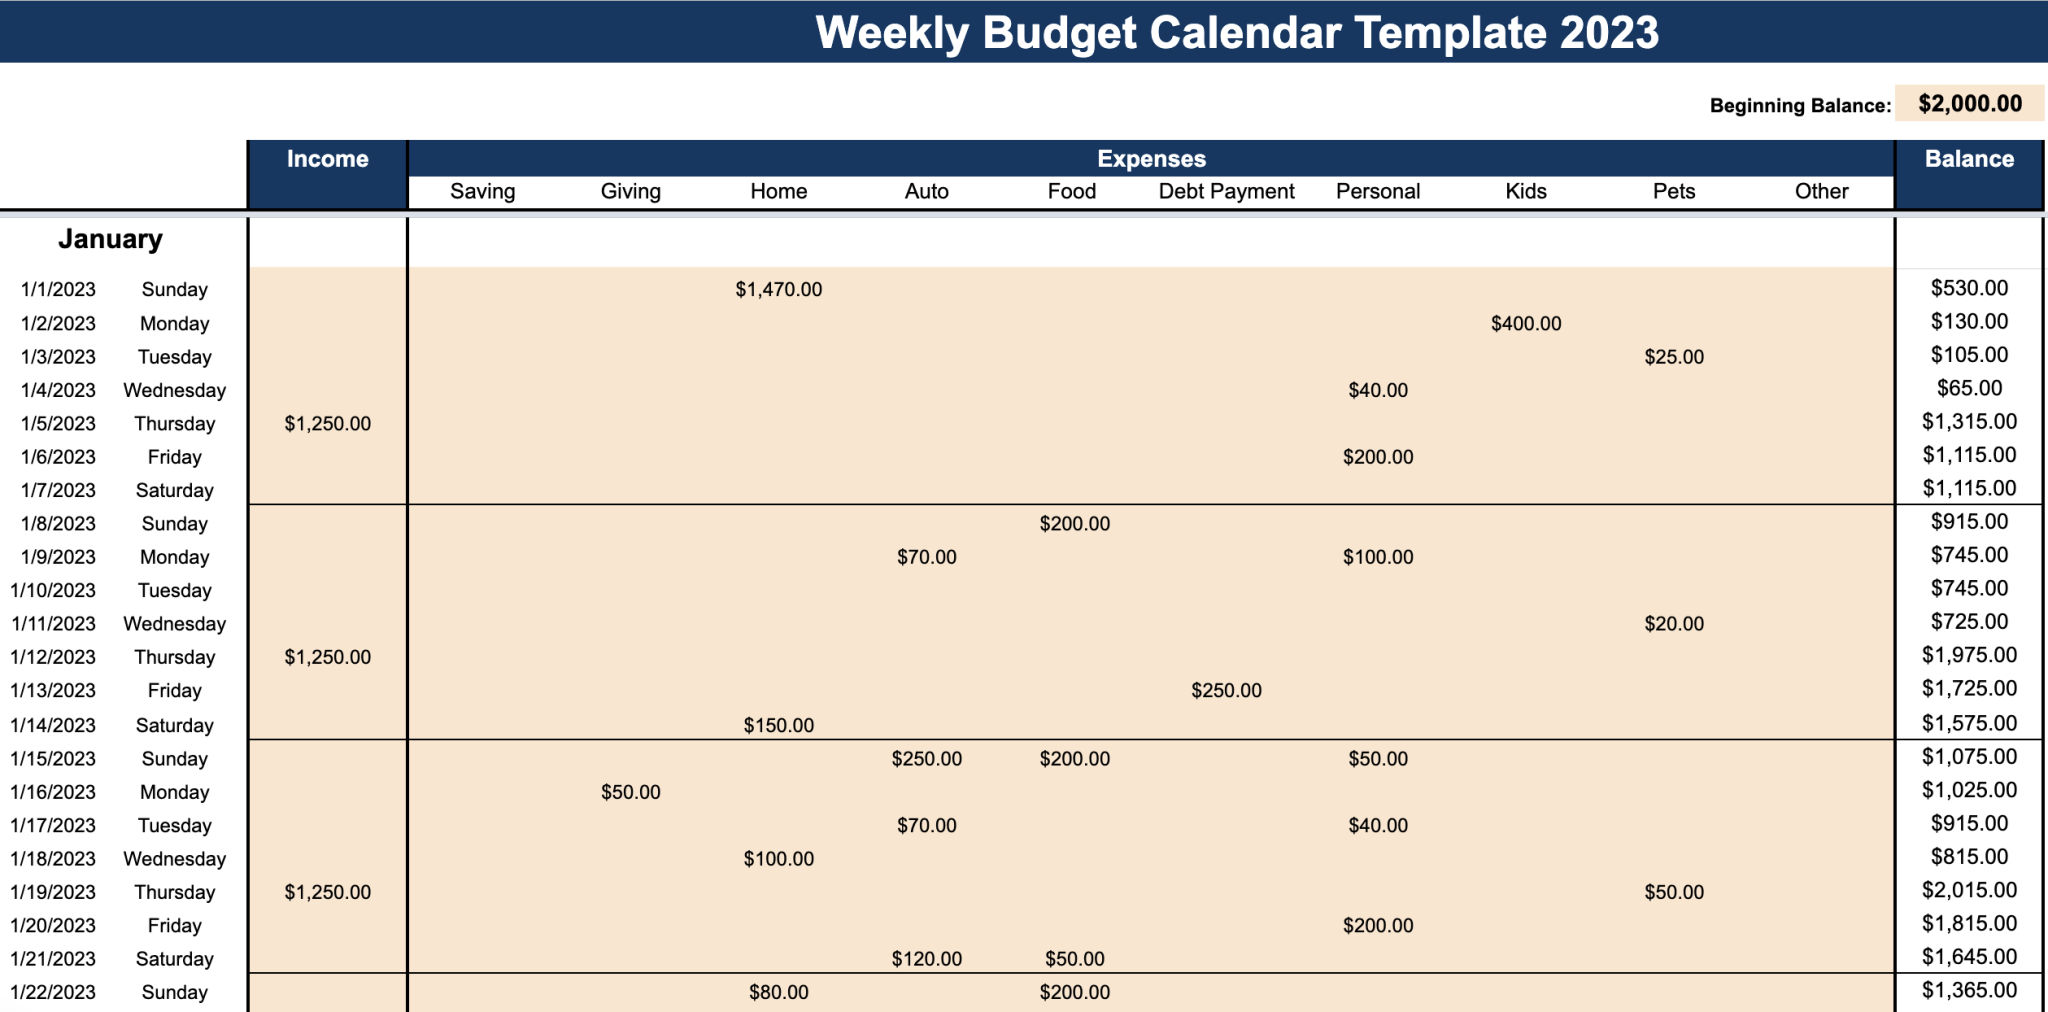 https://cdn.moneyzine.com/lamf/wp-content/uploads/2022/12/Weekly-Budget-Tracker-Calendar-2023-1.png